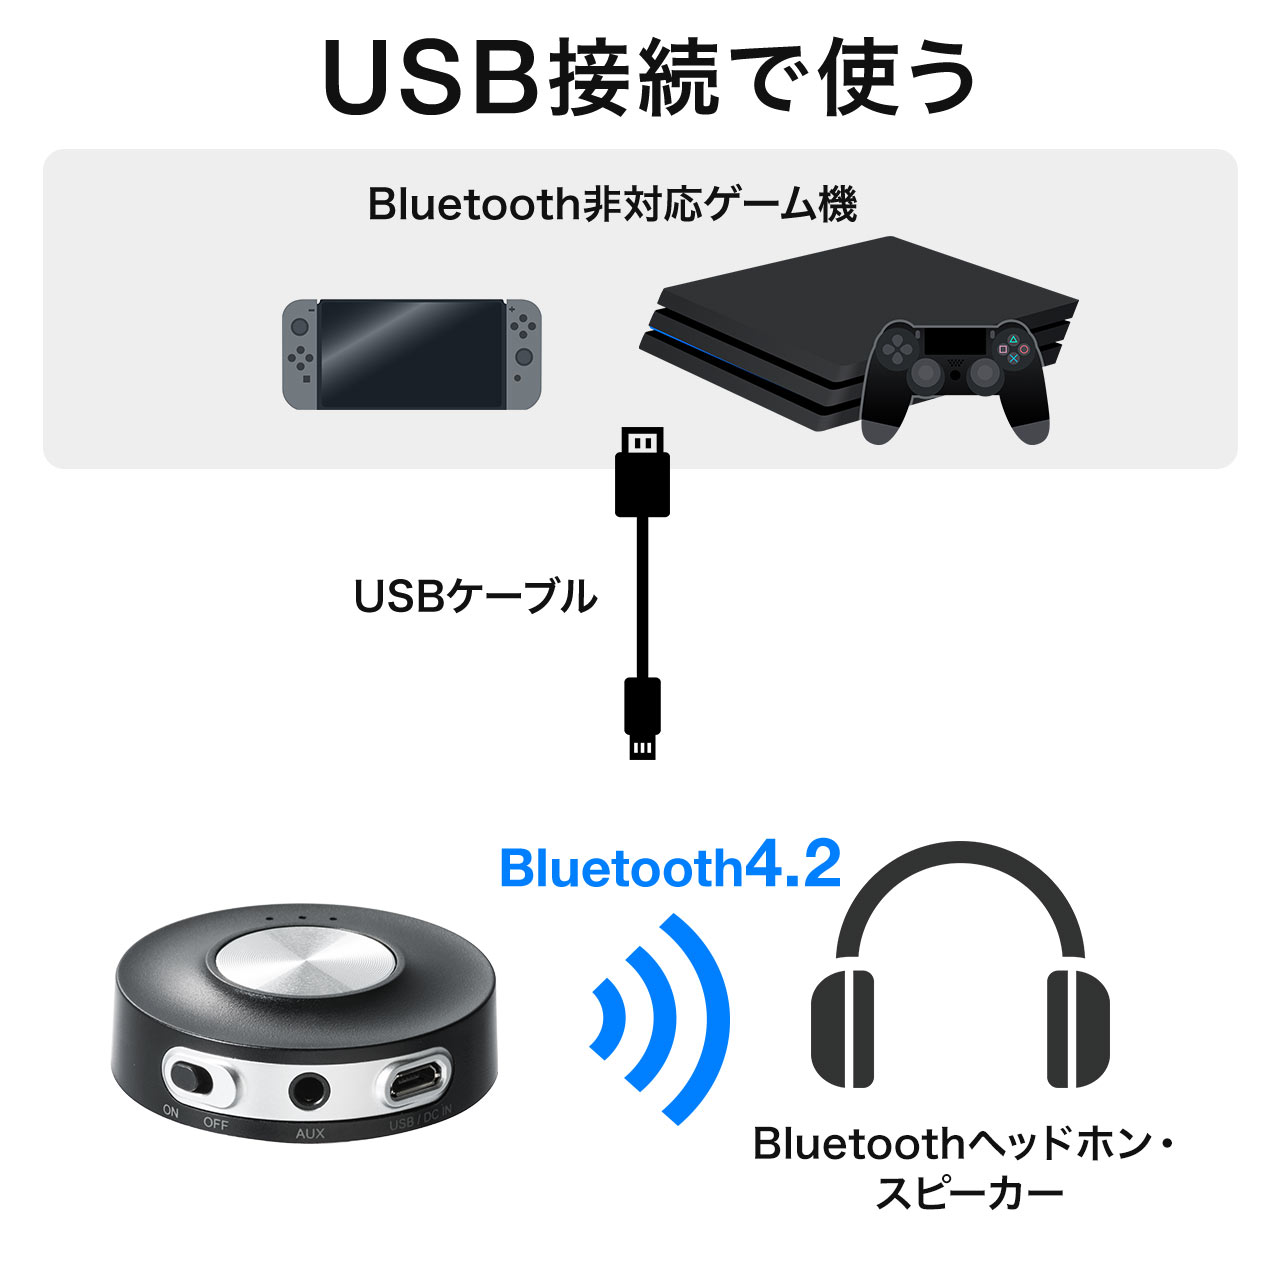 BluetoothgX~b^[iPS4ENintendo SwitchEapt-X Low LatencyExE2䓯MEAiO/CXϊEI[fBIMj 400-BTAD004N